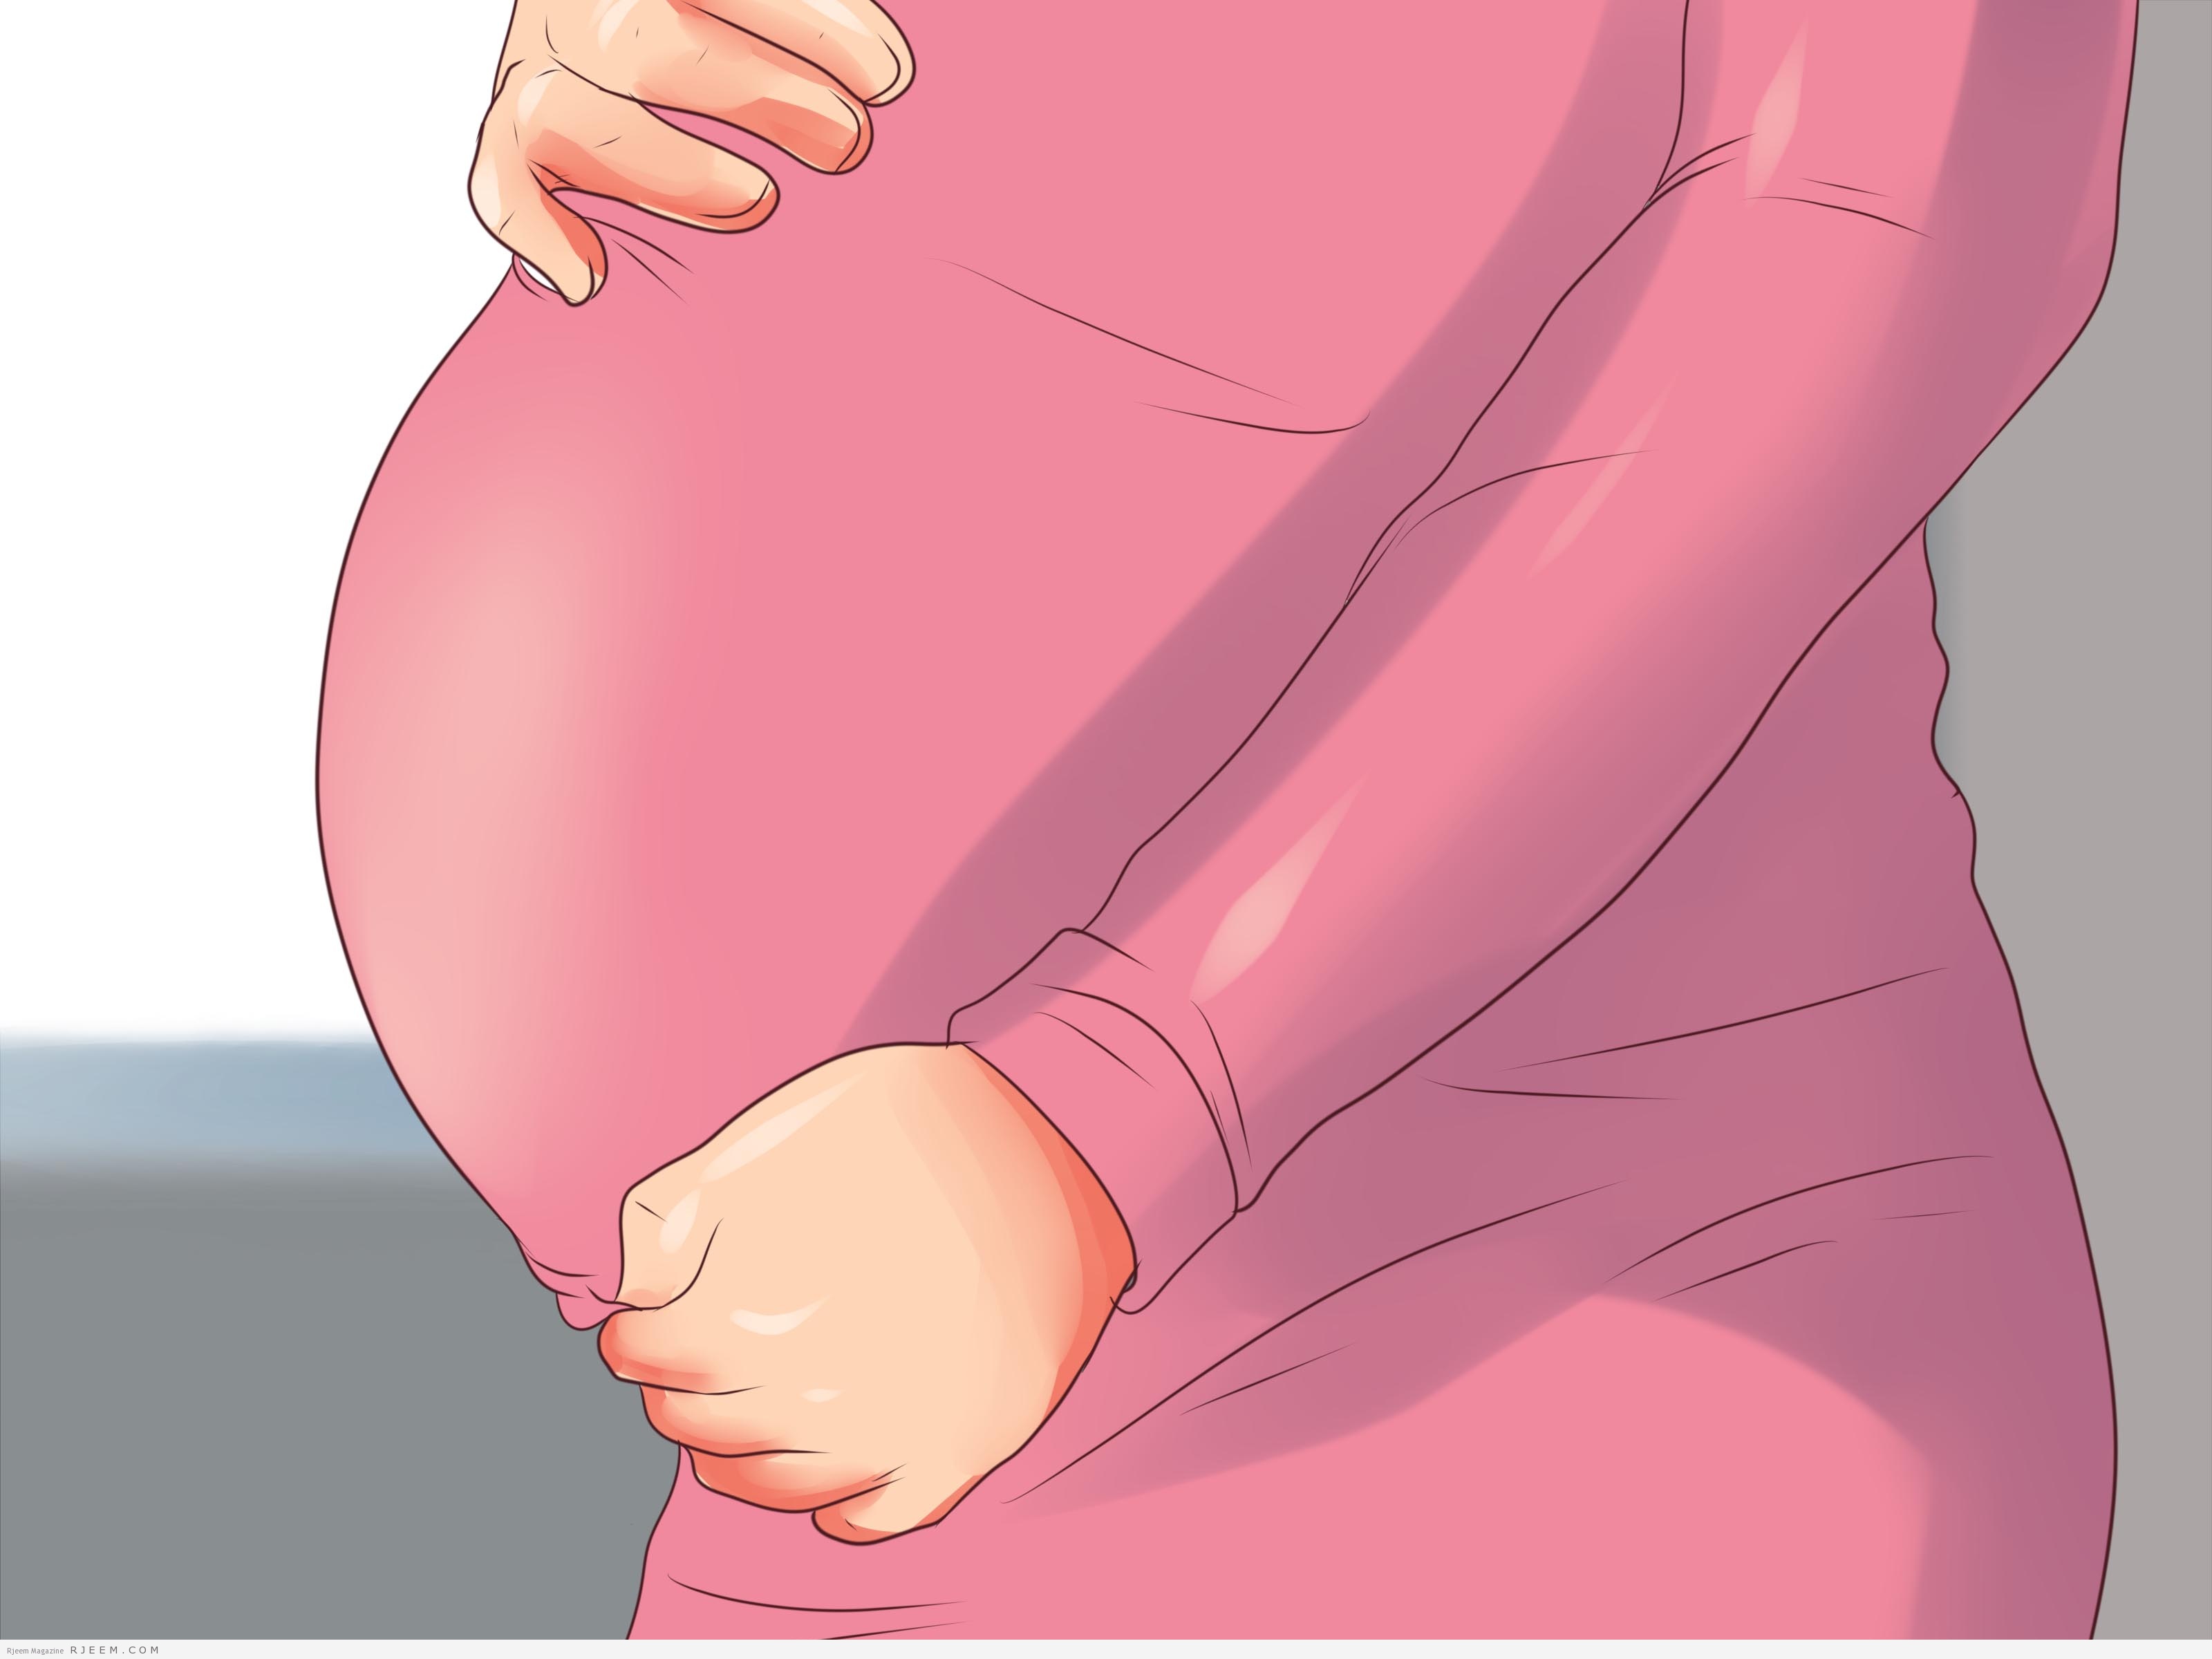 نصائح صحية وجمالية للحامل